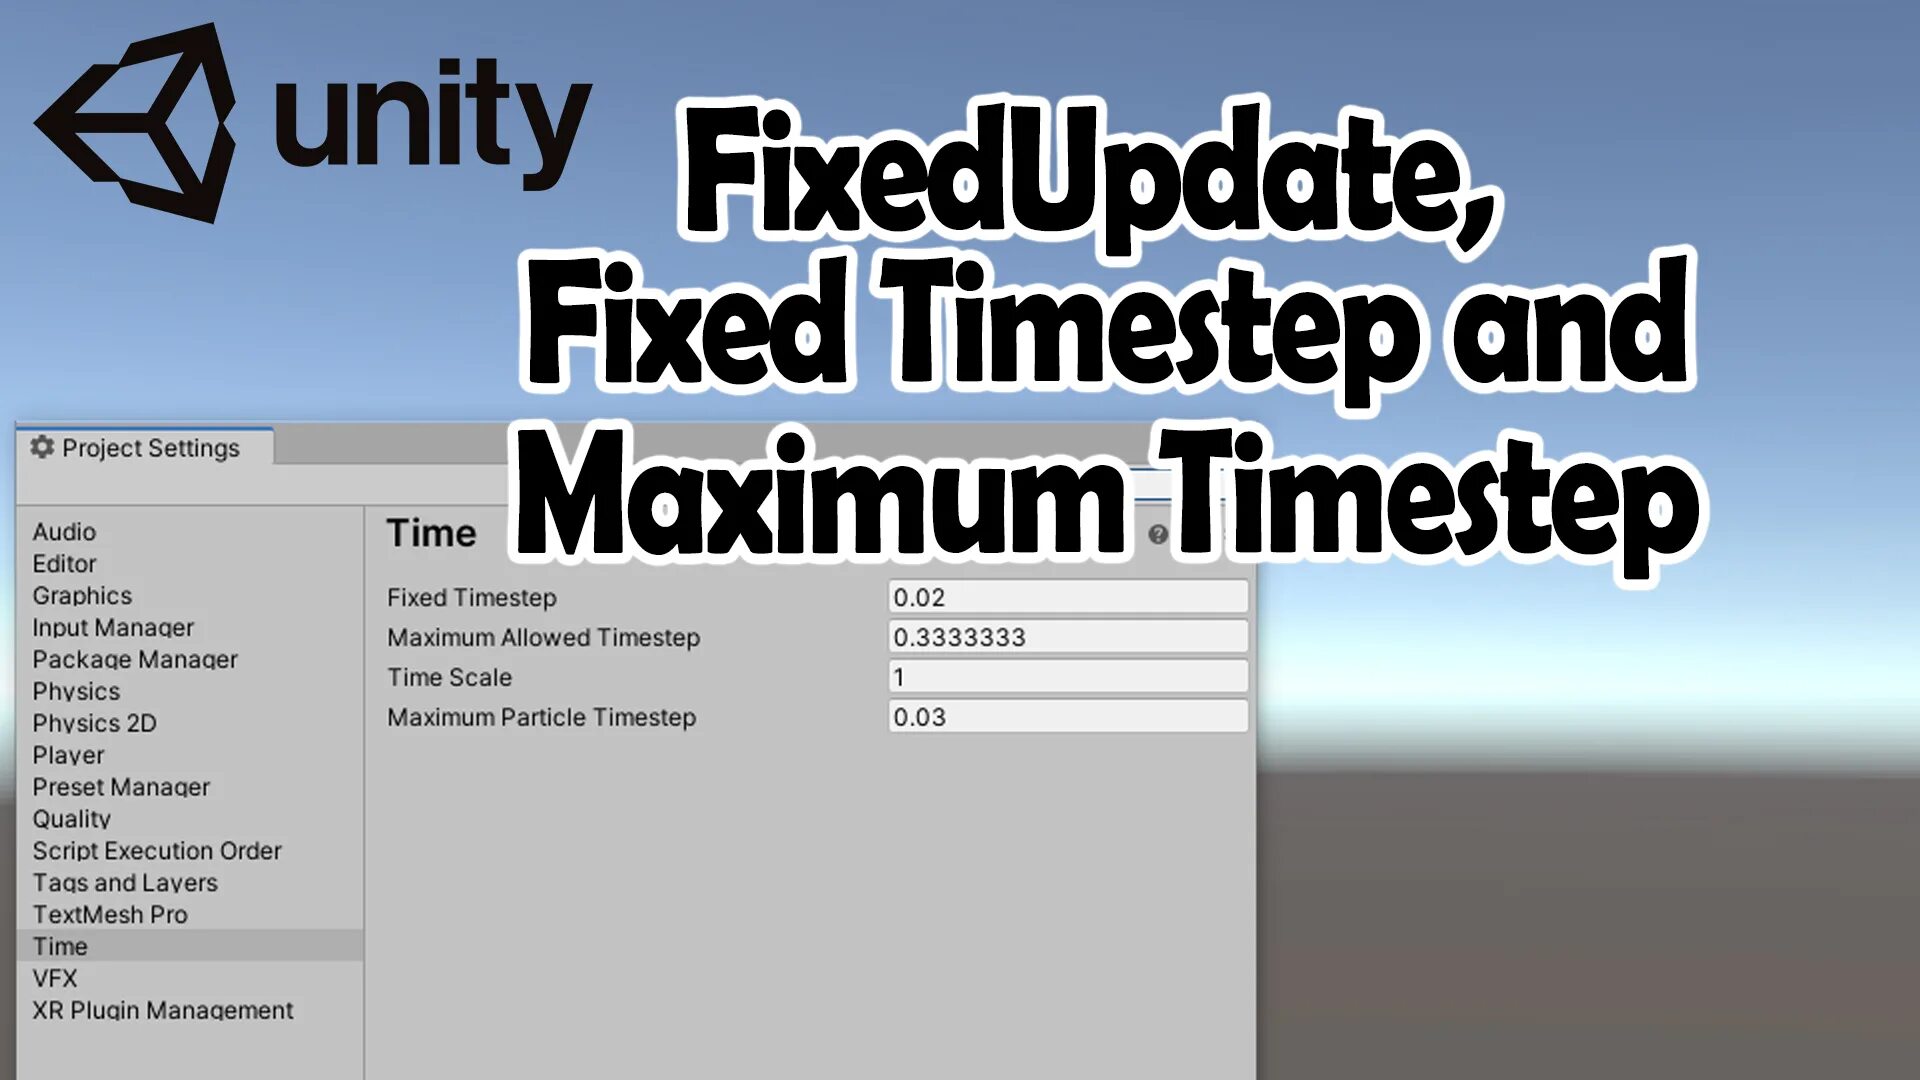 FIXEDUPDATE Unity. Update FIXEDUPDATE Unity. FIXEDDELTATIME Unity. Unity fixed update change time. Unity fix